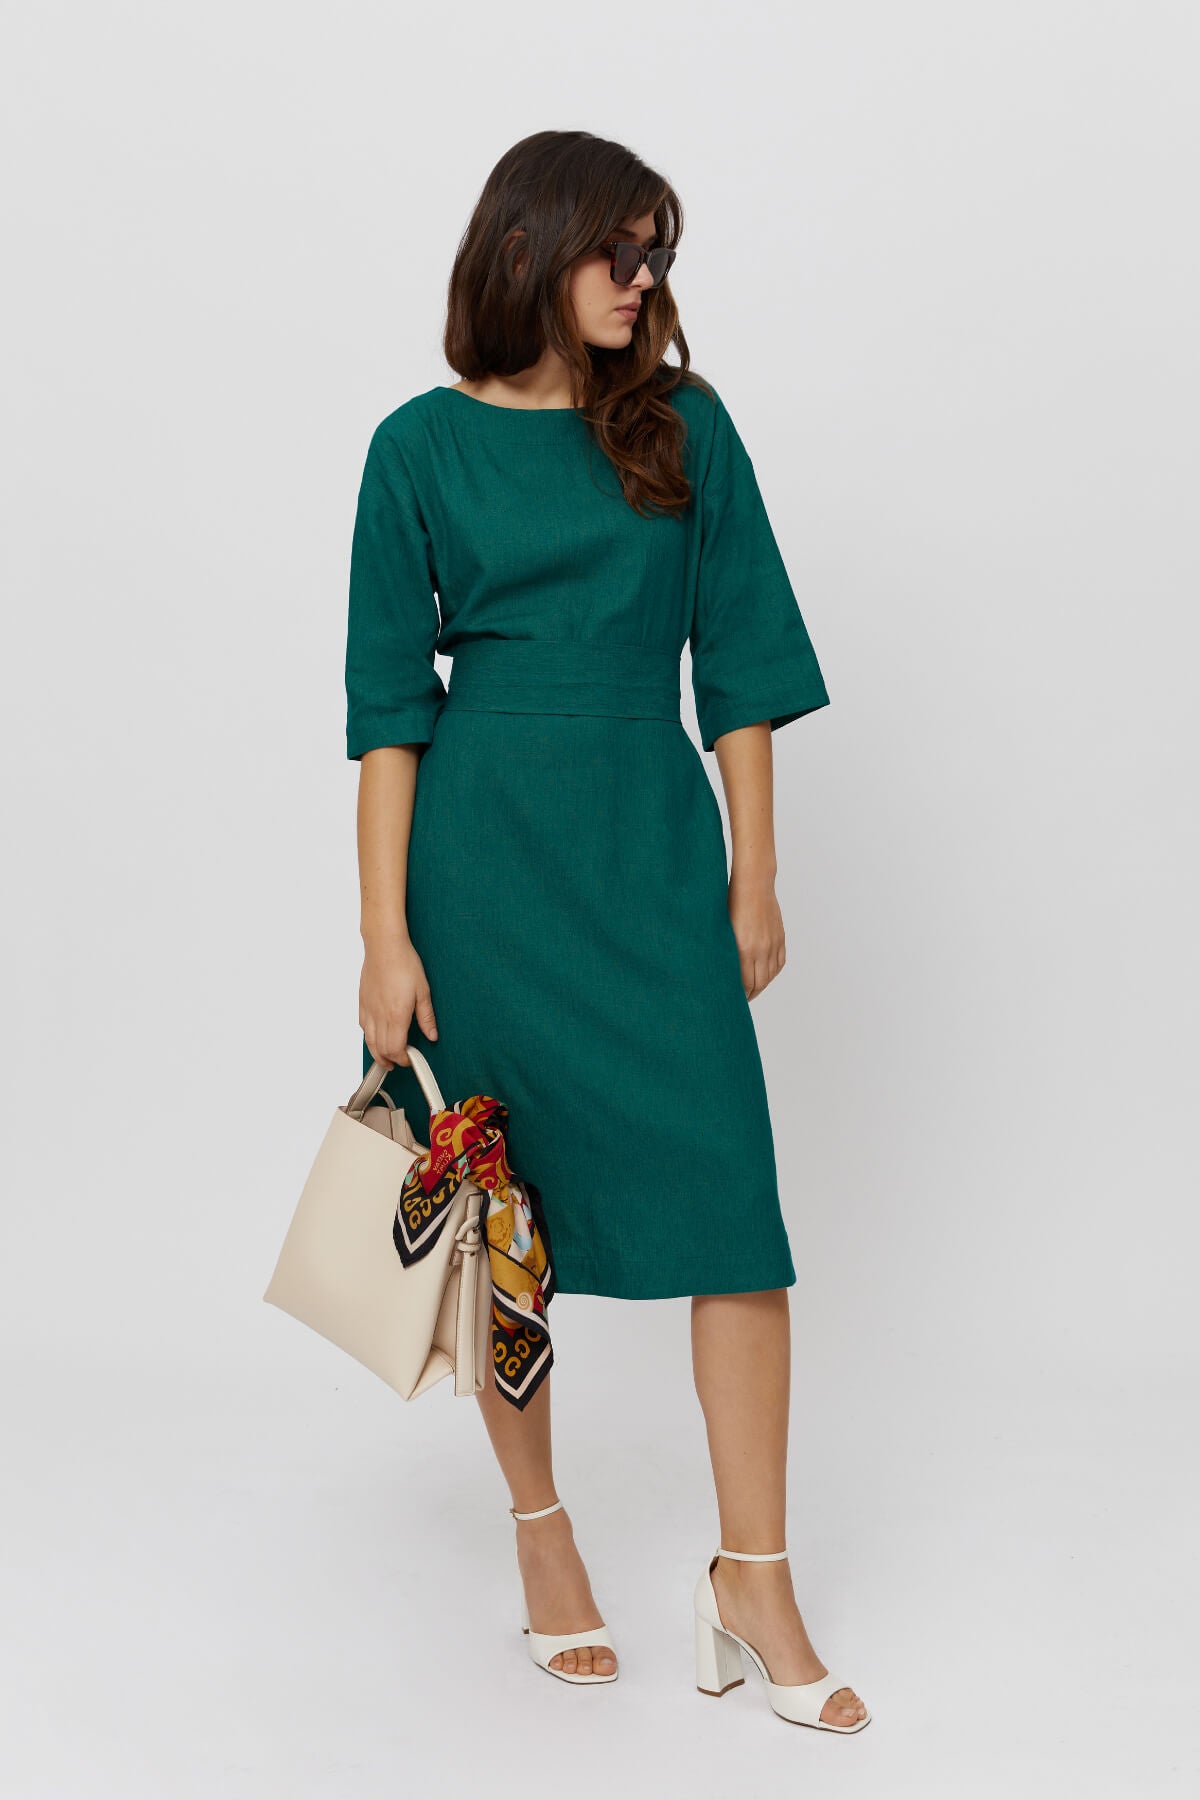 Sommer Leinenkleid grün MANE · Festliches Sommer Kleid 2023 · Kleid aus Leinen · Elegantes grünes Leinenkleid  - AYANI